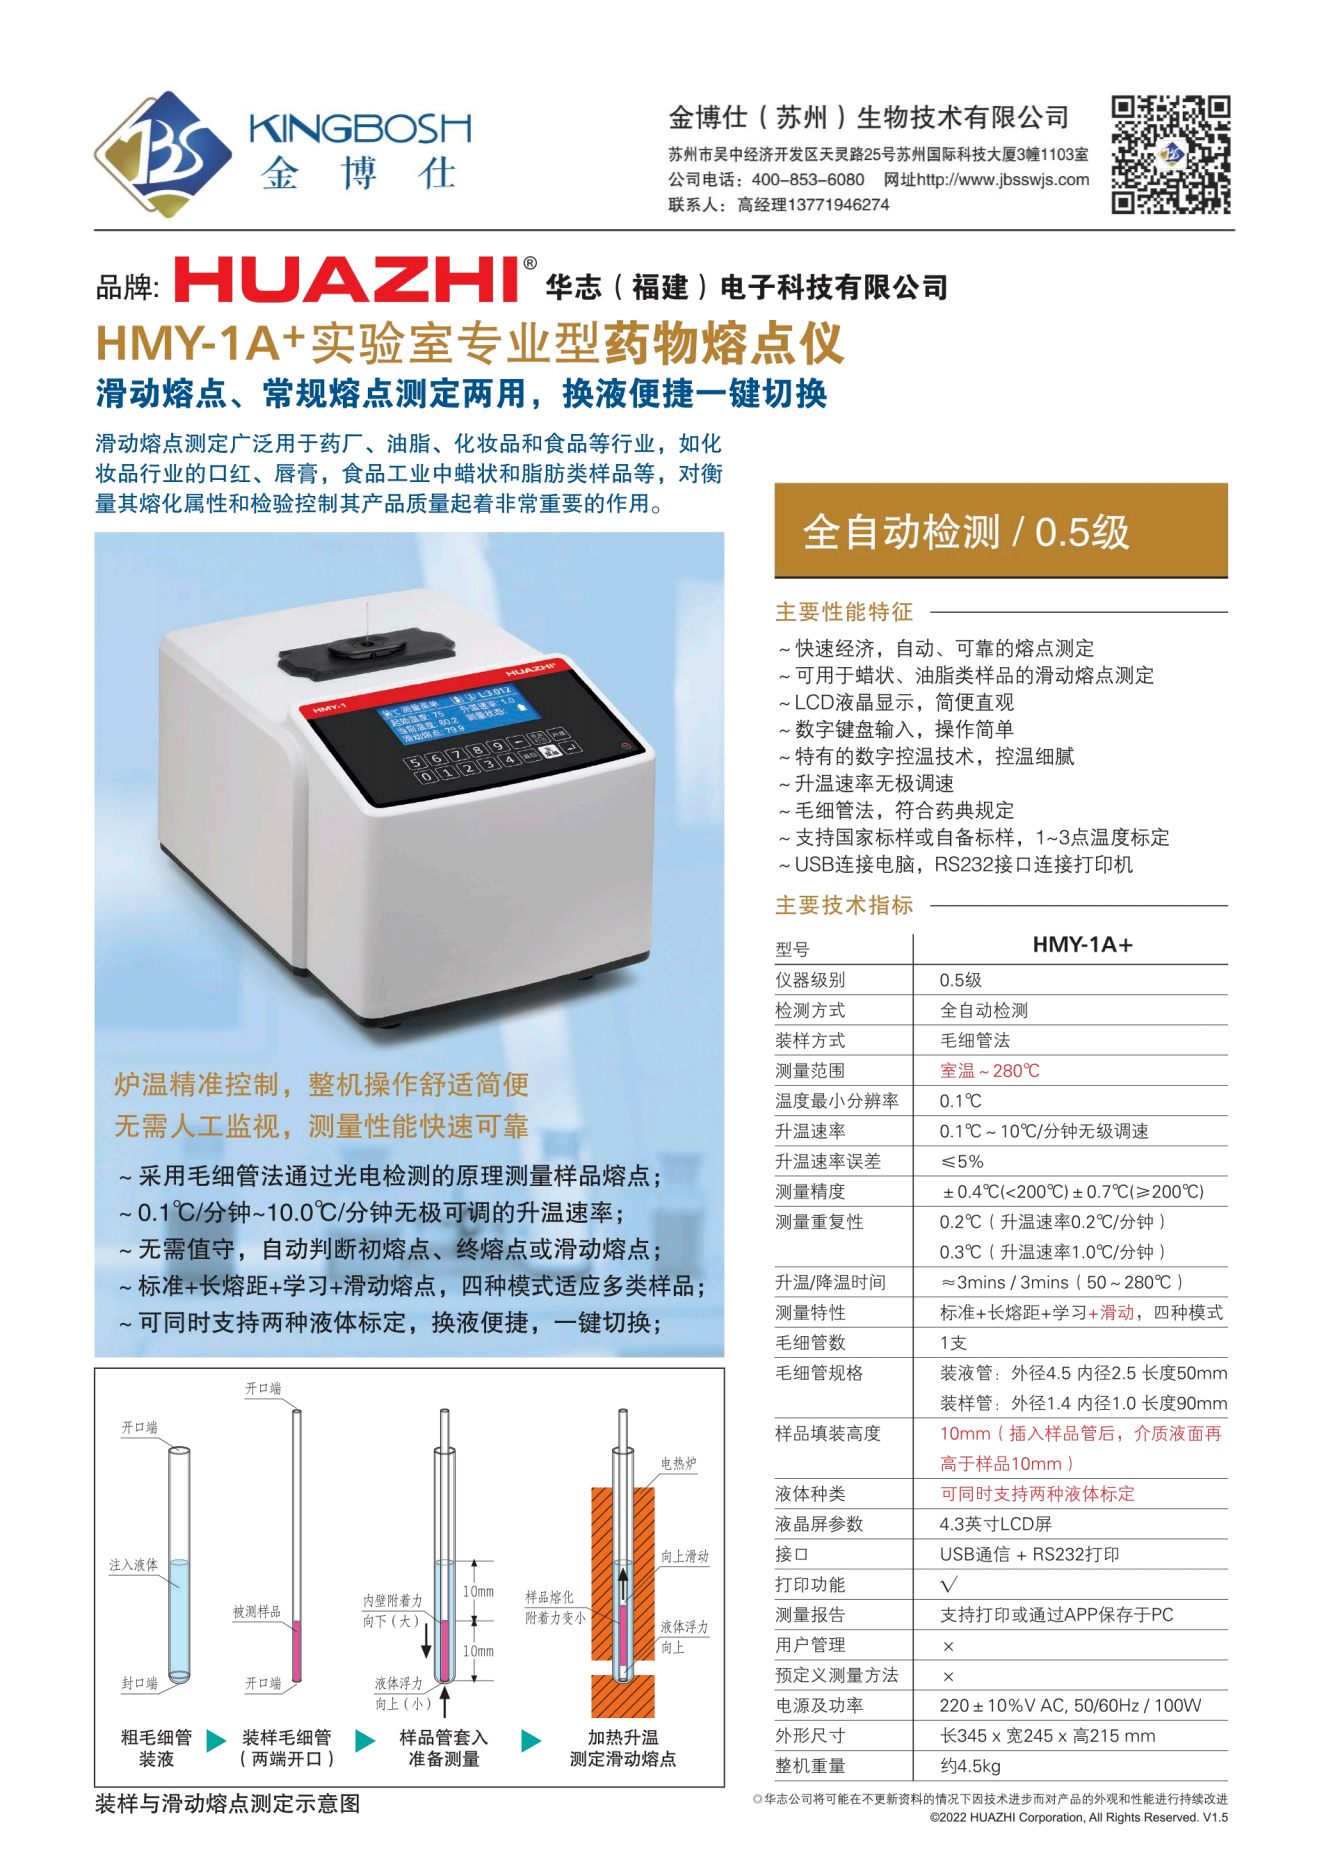 10,金博仕-HMY-1A+显微熔点仪单机详情.png